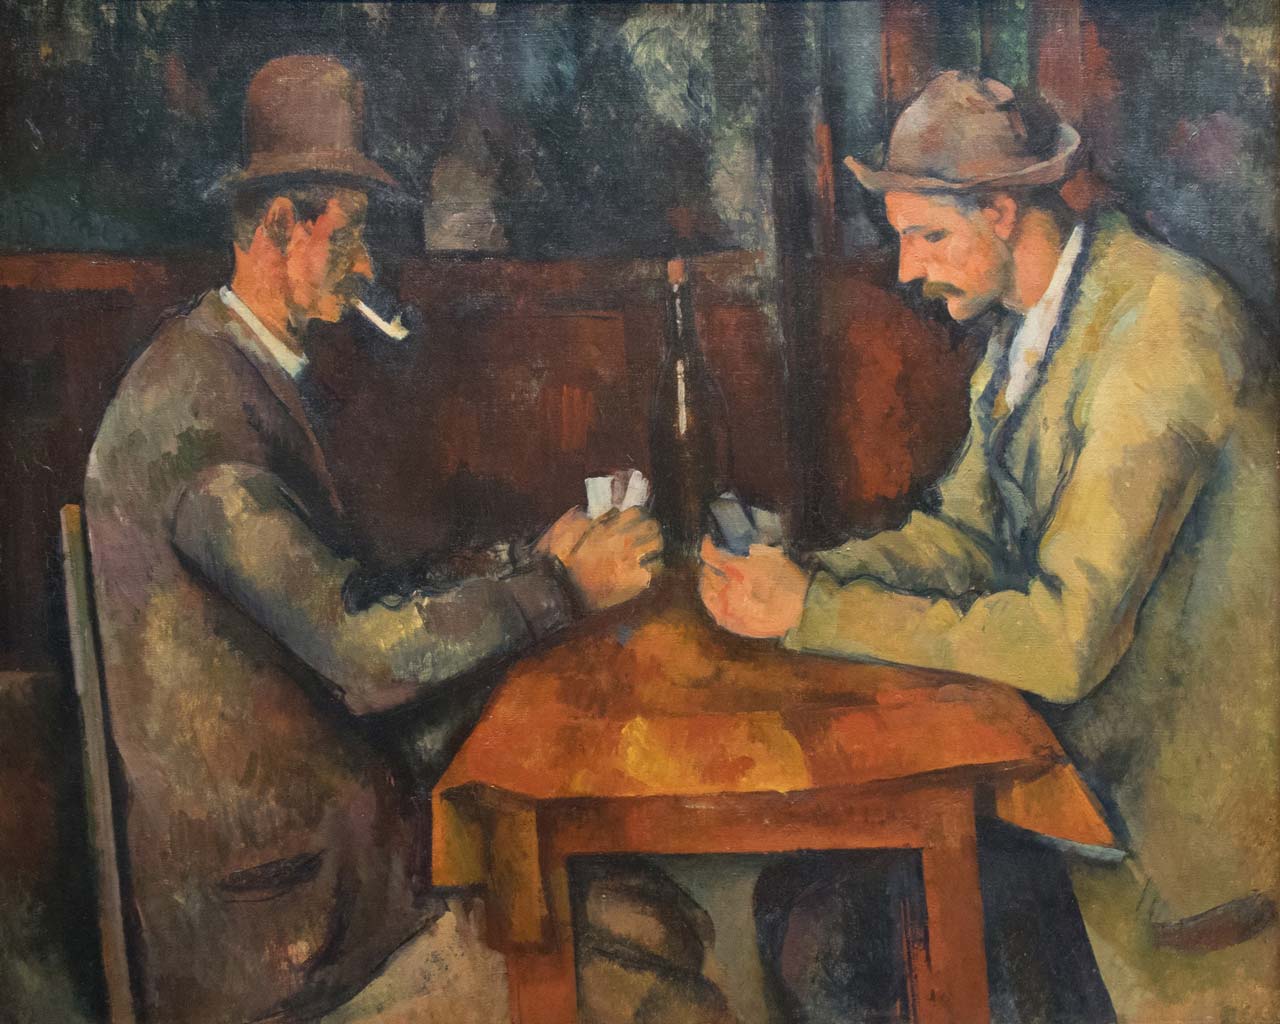 Les joueurs de cartes de Paul Cézanne : une exploration de la forme et de la composition